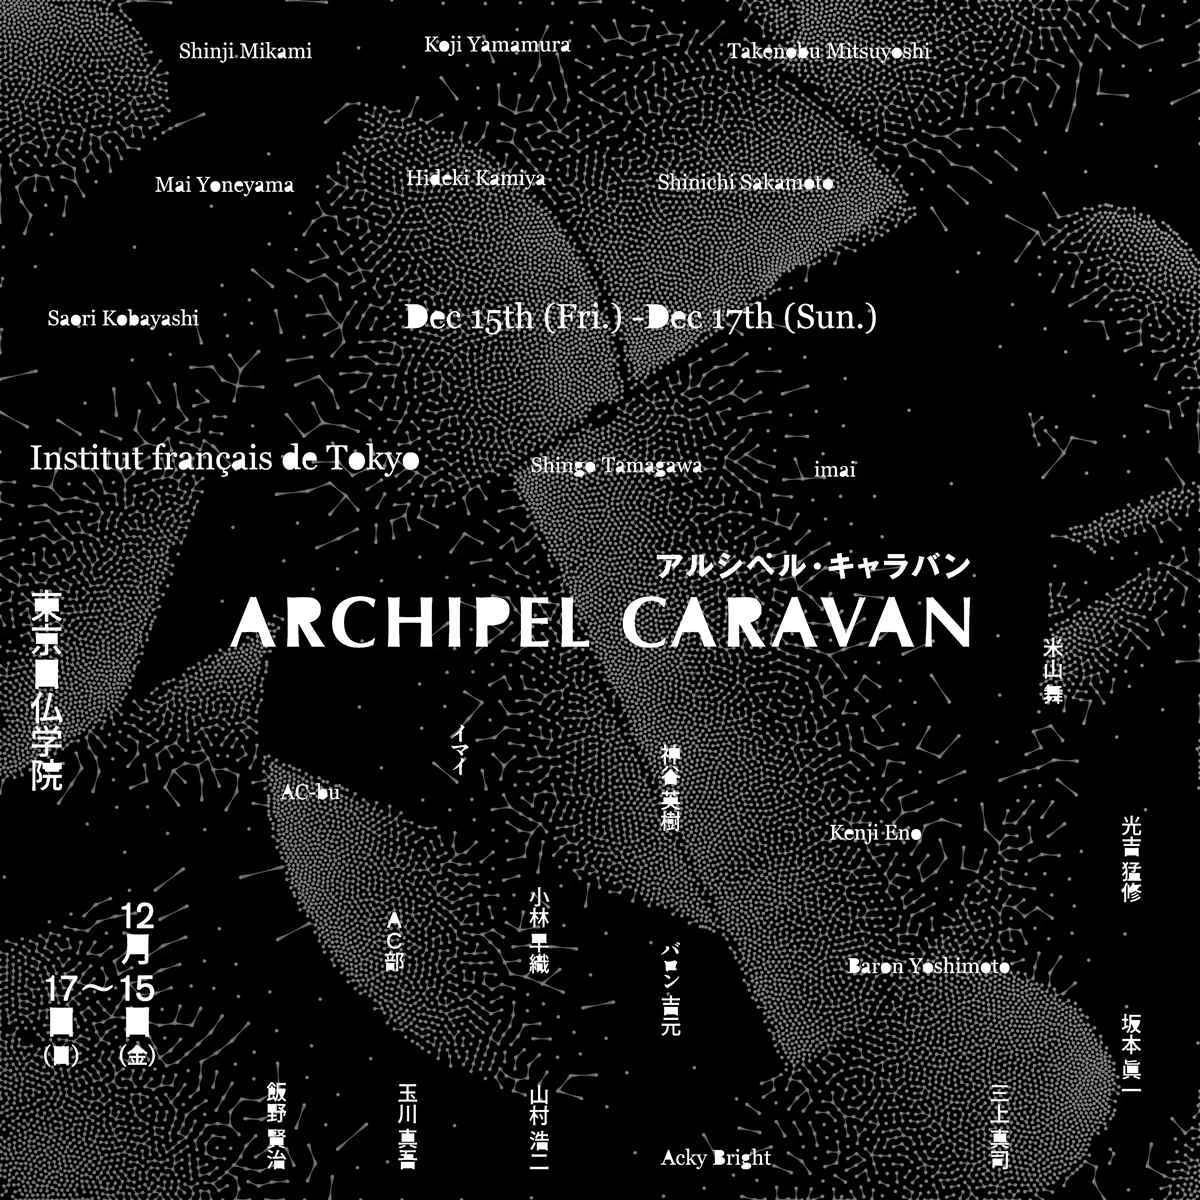 クリエイターに焦点を当てた日本ポップカルチャーの祭典「Archipel Caravan」開催 